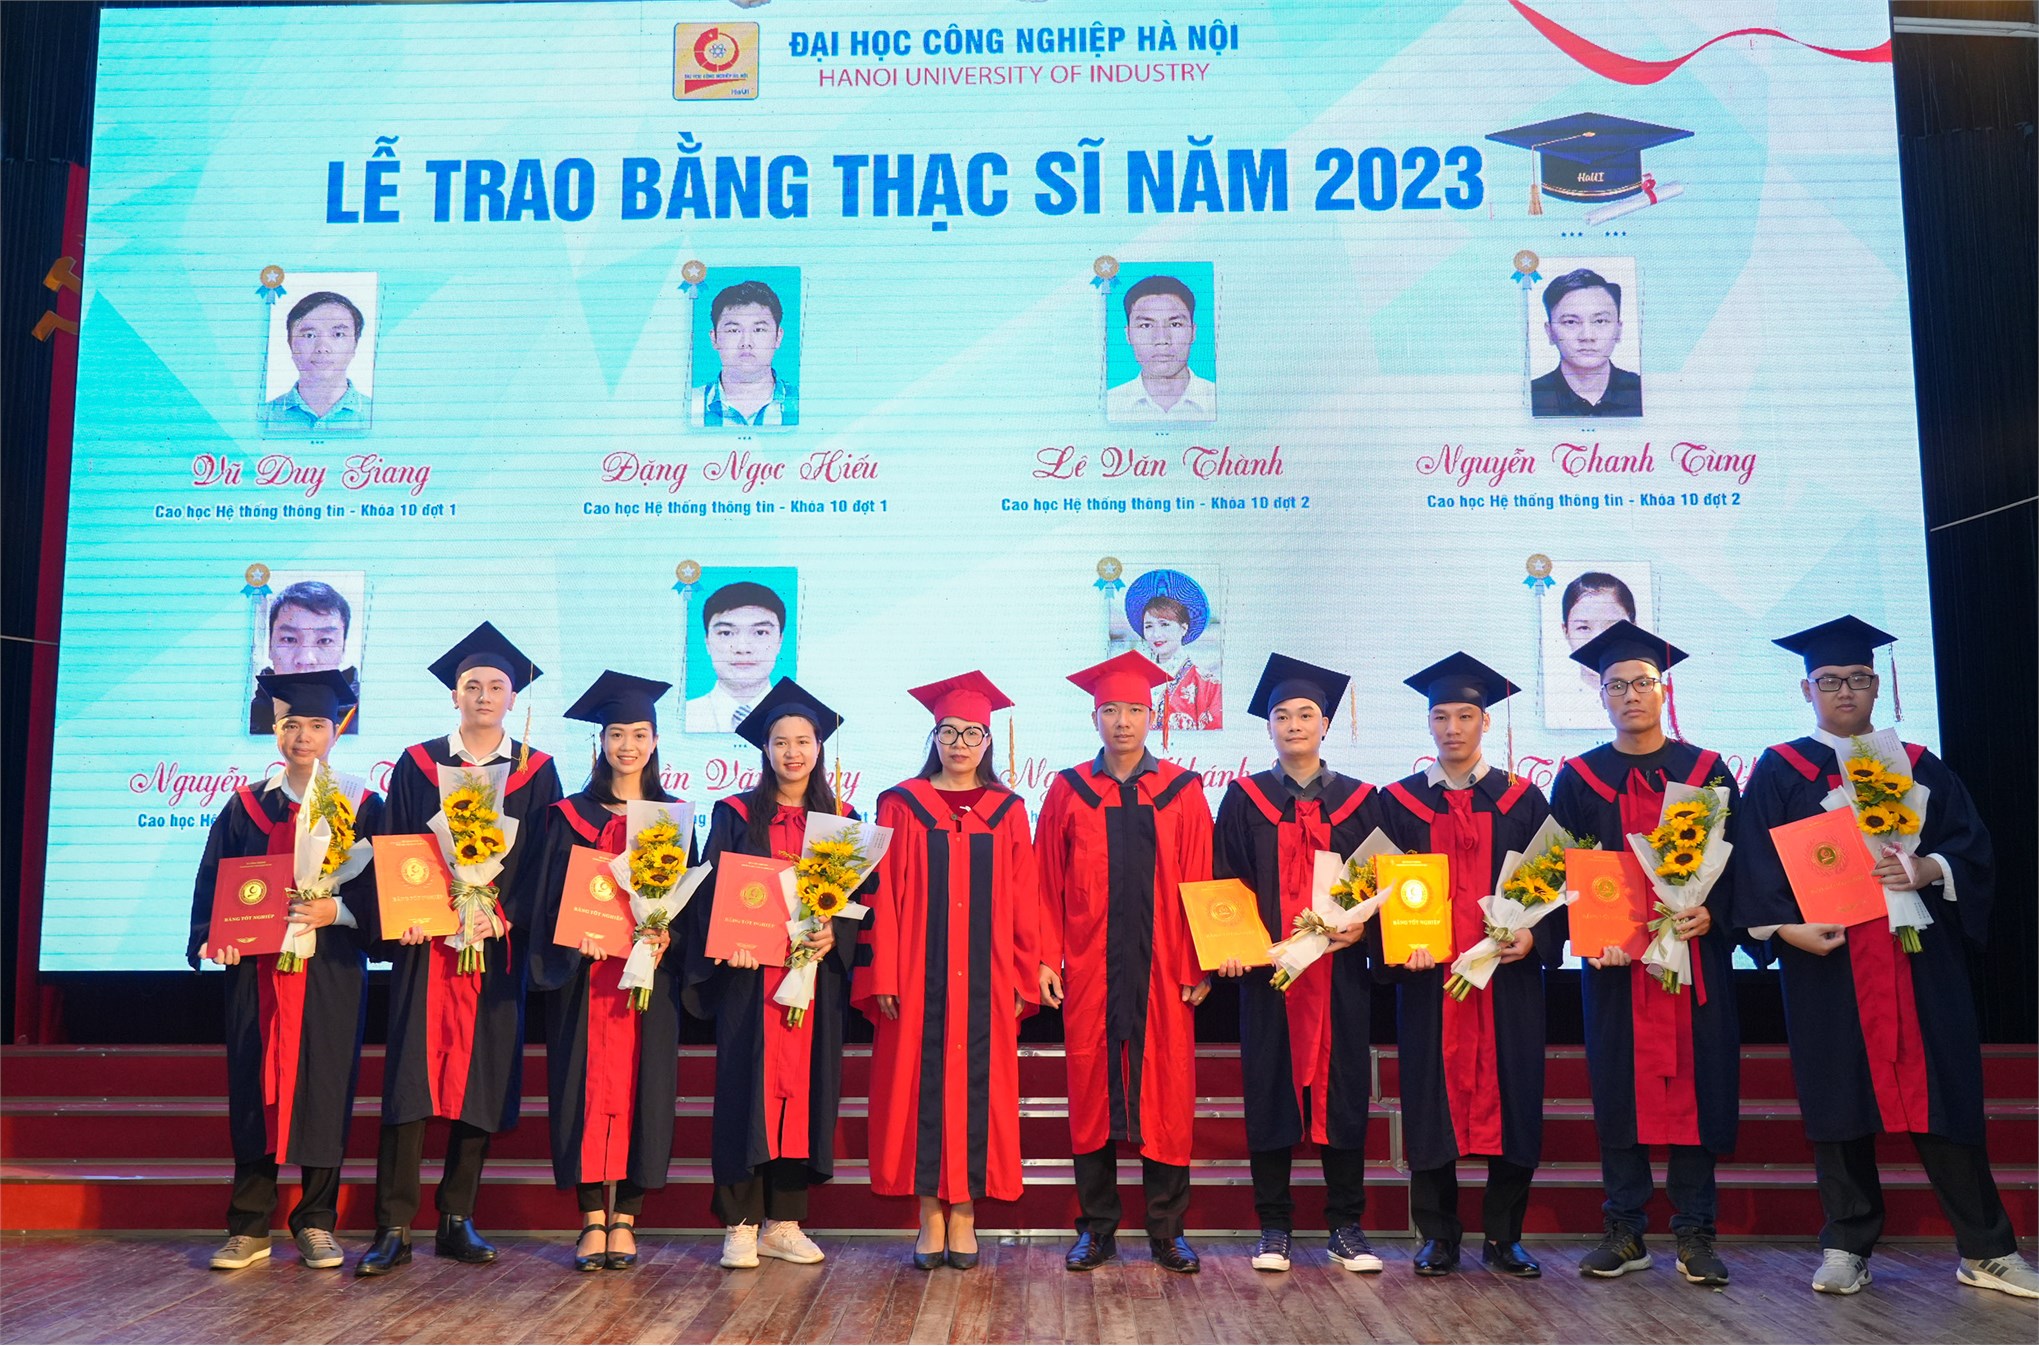 Lễ trao bằng tiến sĩ, thạc sĩ năm 2023: Khẳng định uy tín và chất lượng đào tạo trình độ Sau đại học của trường Đại học Công nghiệp Hà Nội.